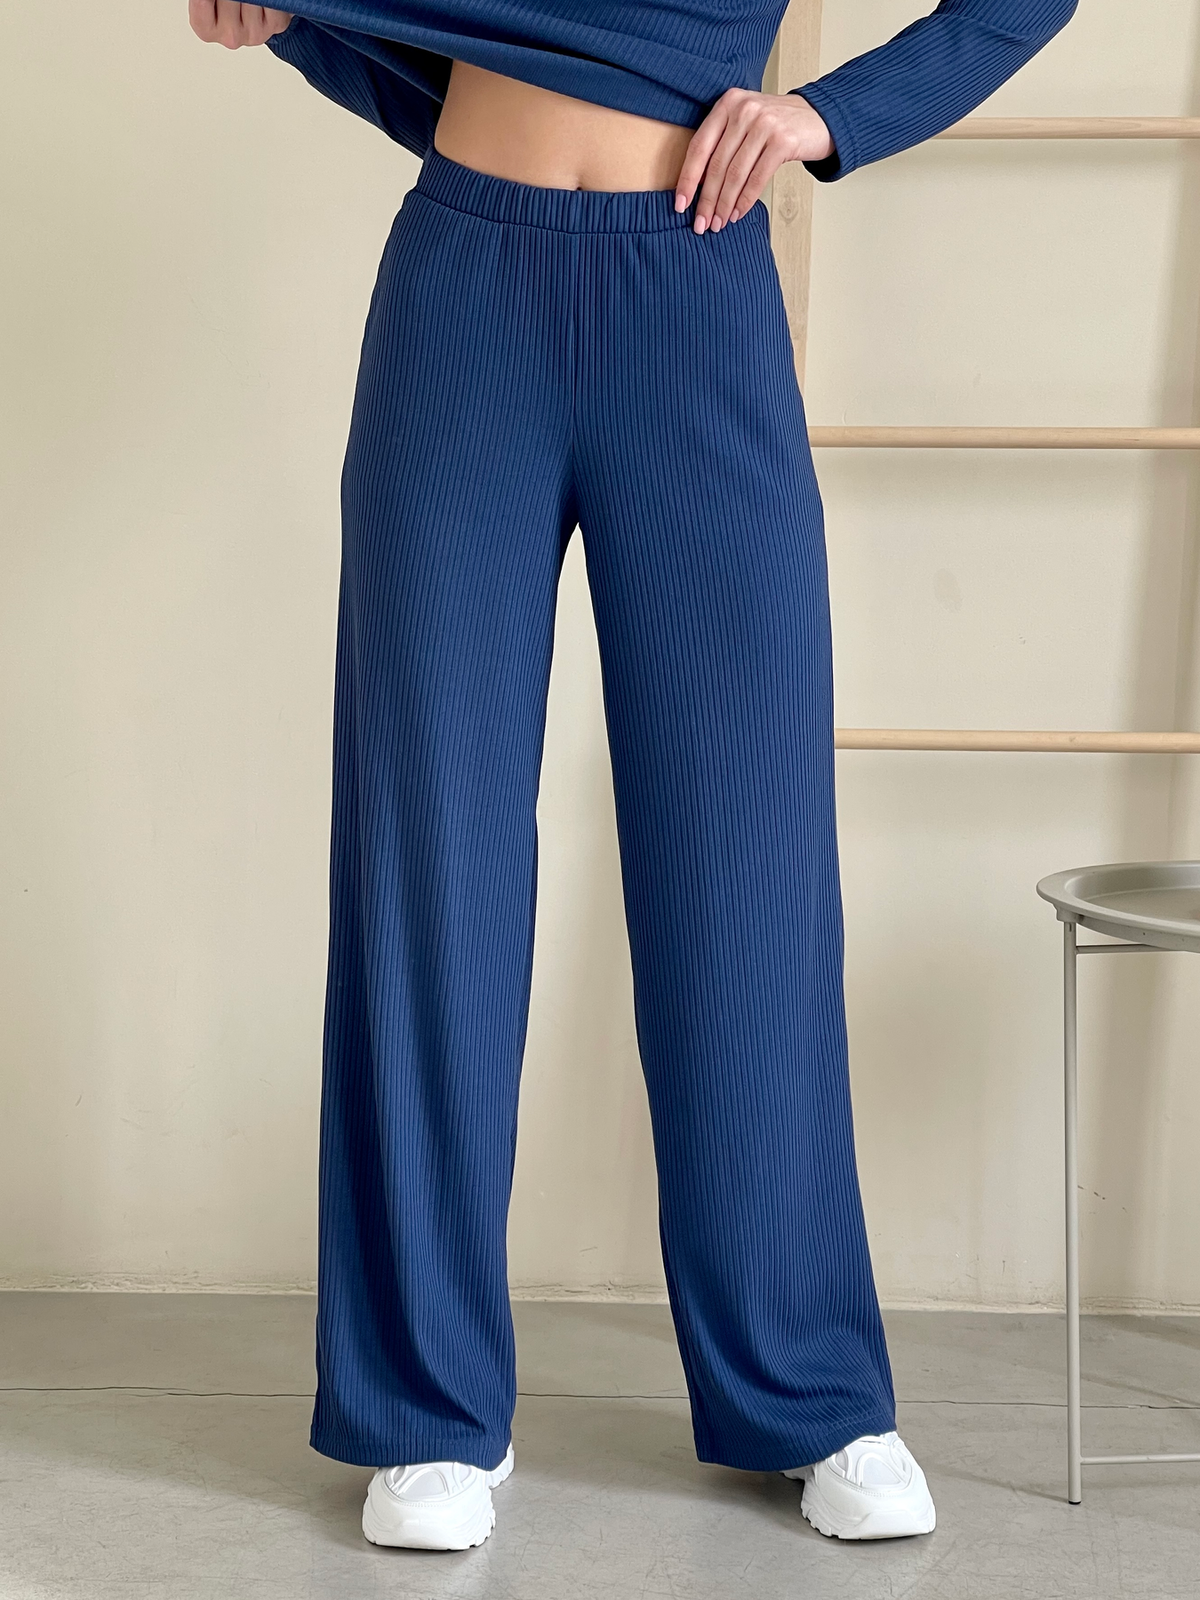 Купить Костюм с широкими брюками в рубчик синий Merlini Менто 100001163, размер 42-44 (S-M) в интернет-магазине